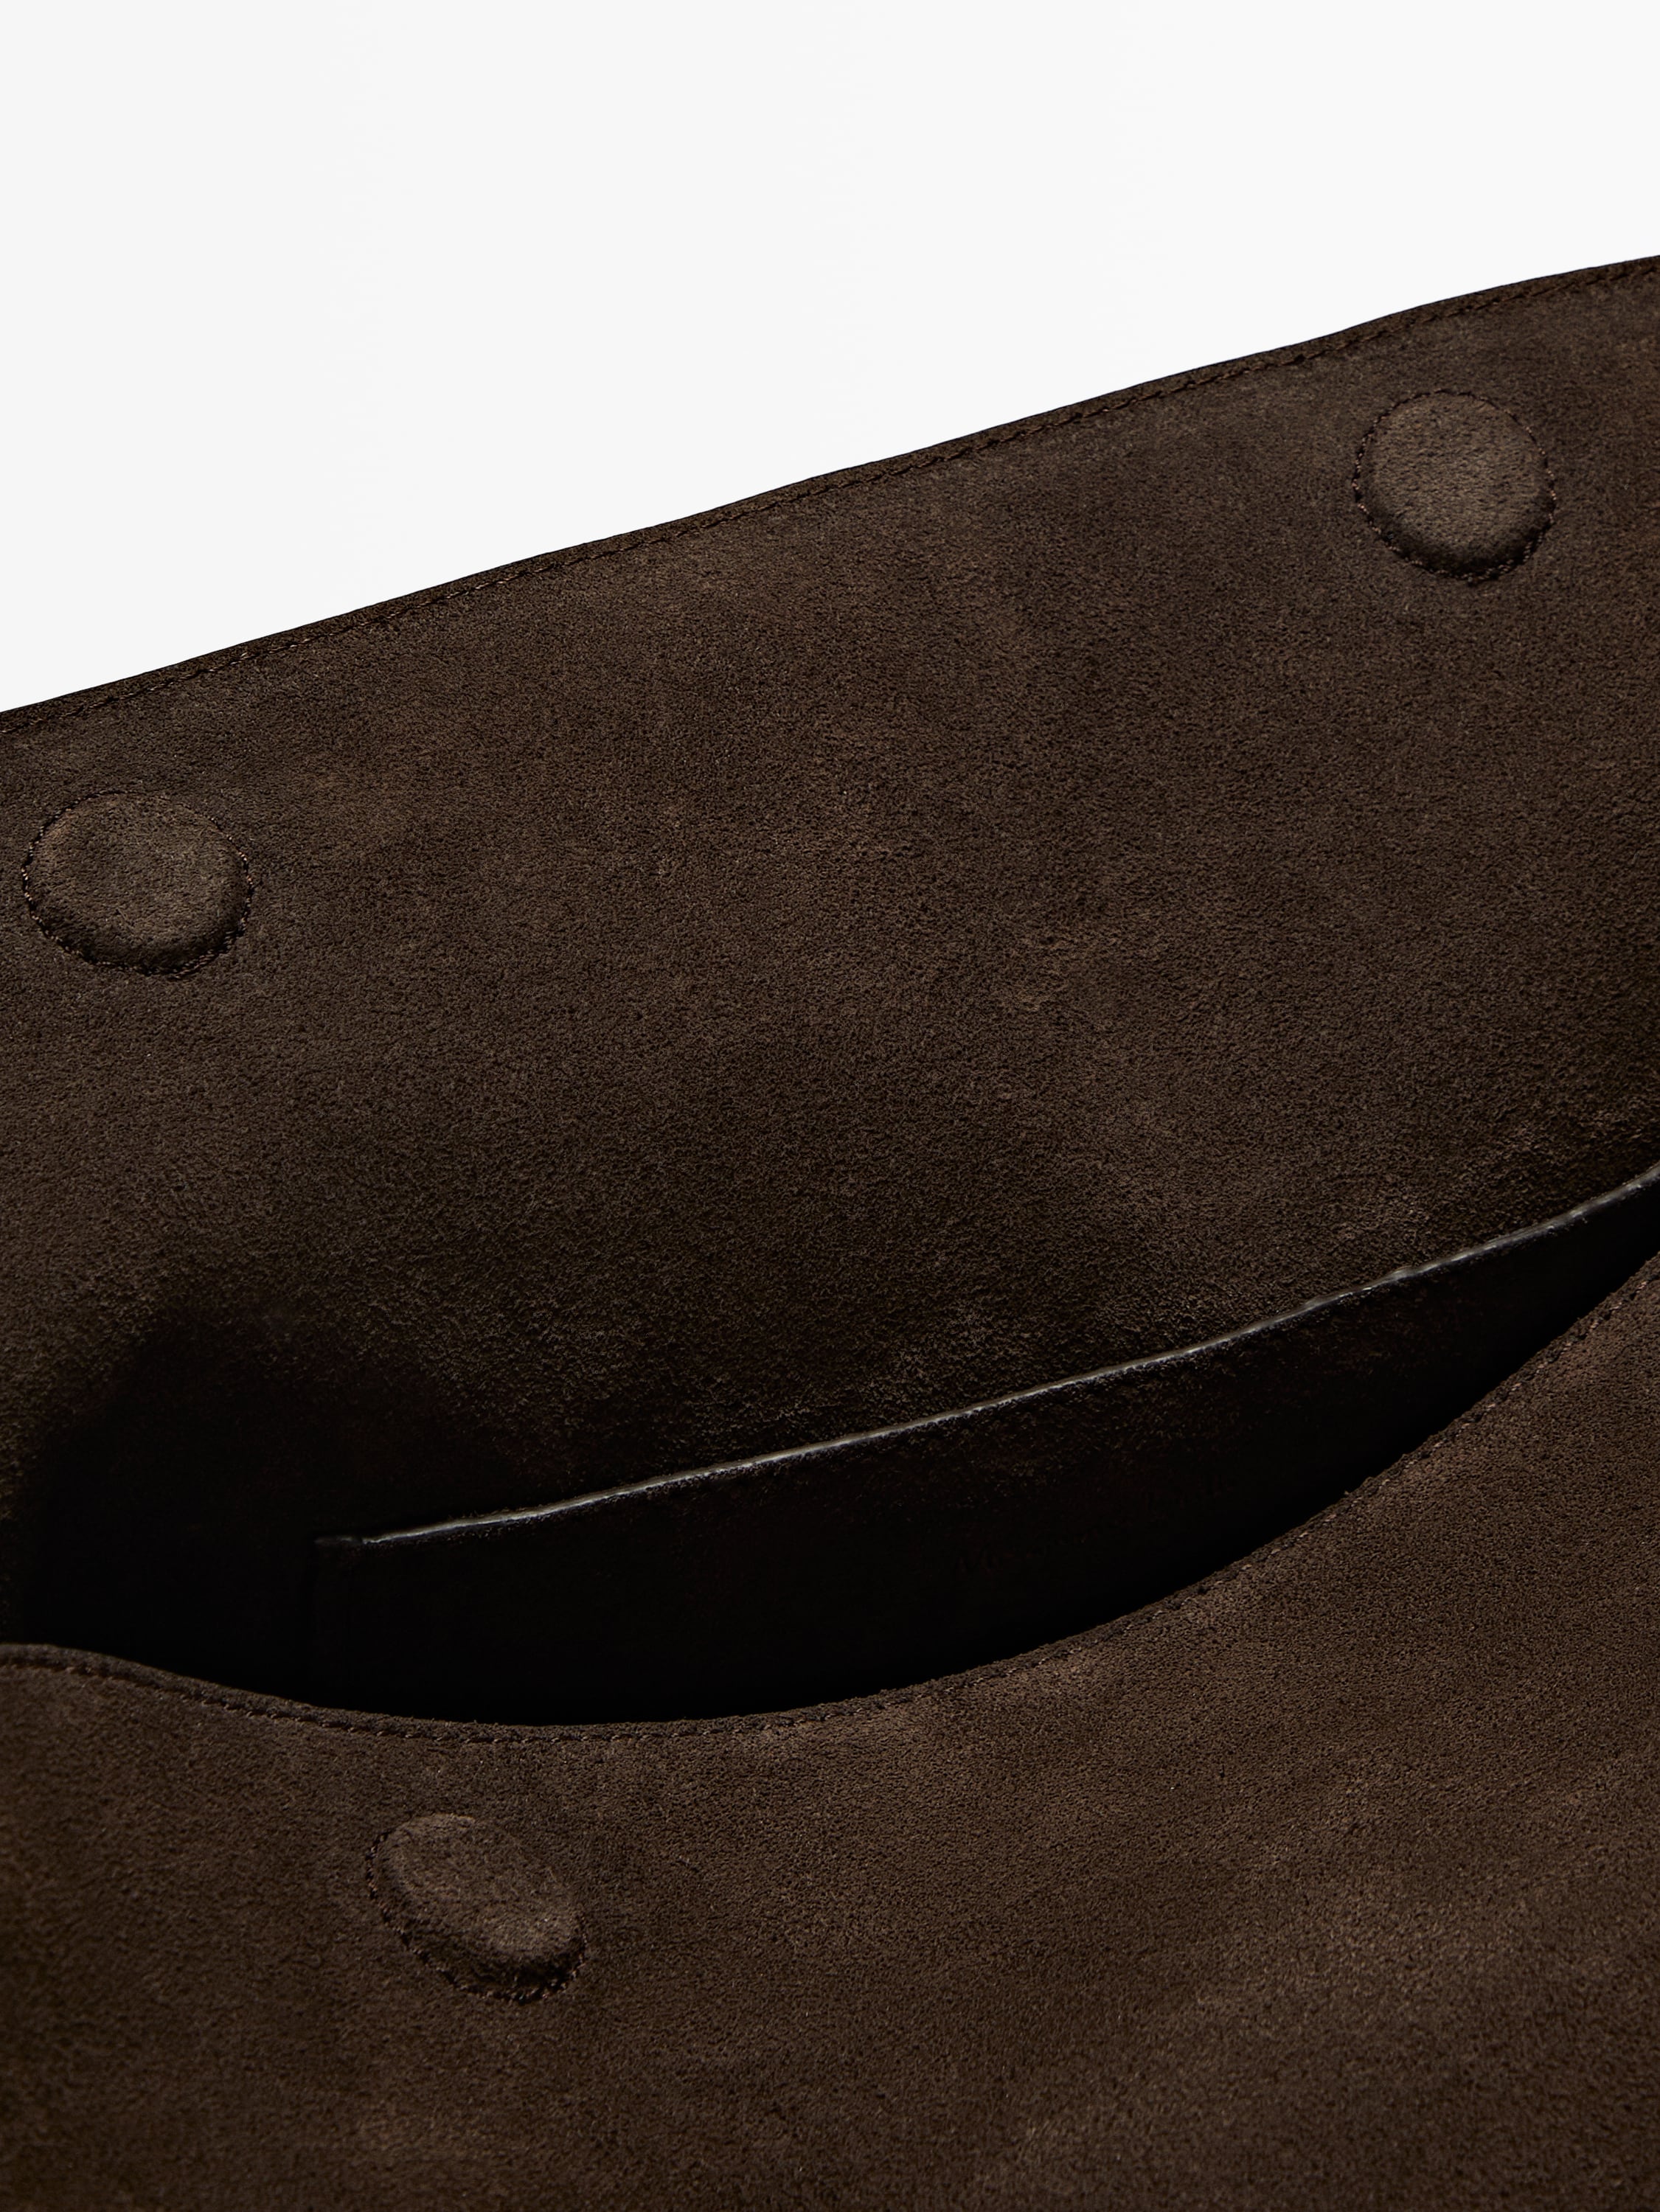 Split suede leather shoulder bag